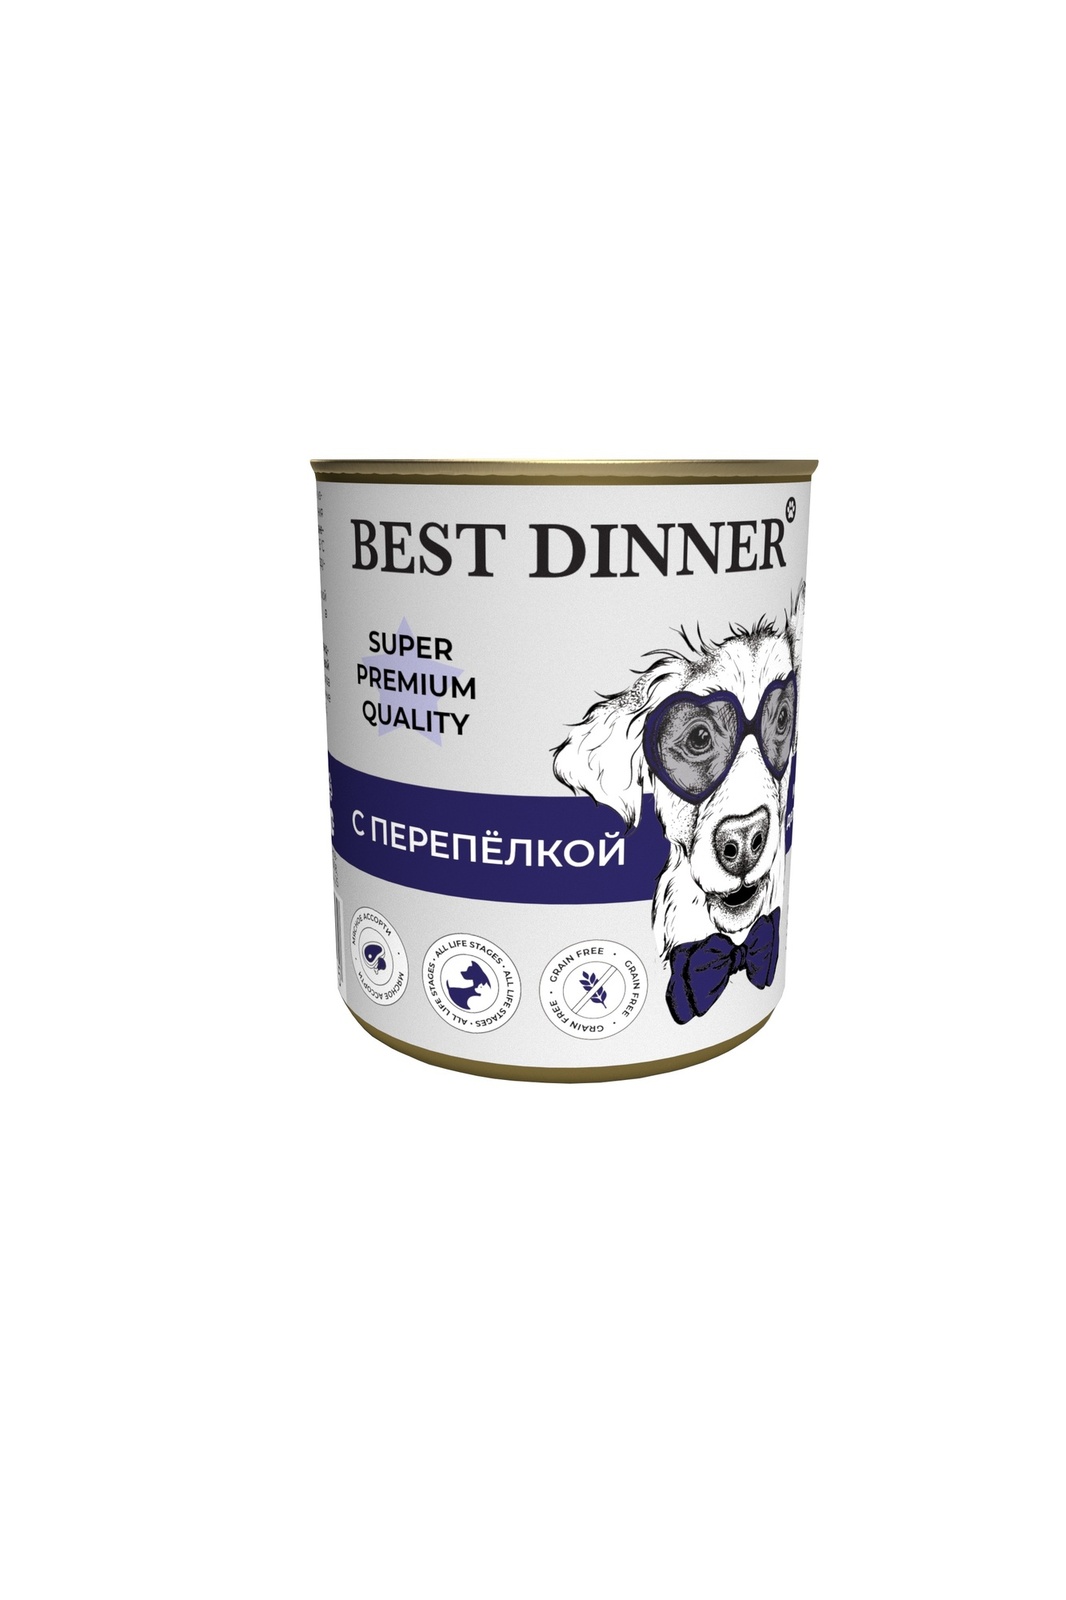 Best Dinner Best Dinner консервы для собак Super Premium С перепелкой (340 г) best dinner best dinner консервы конина паштет для собак с чувствительным пищеварением 340 г